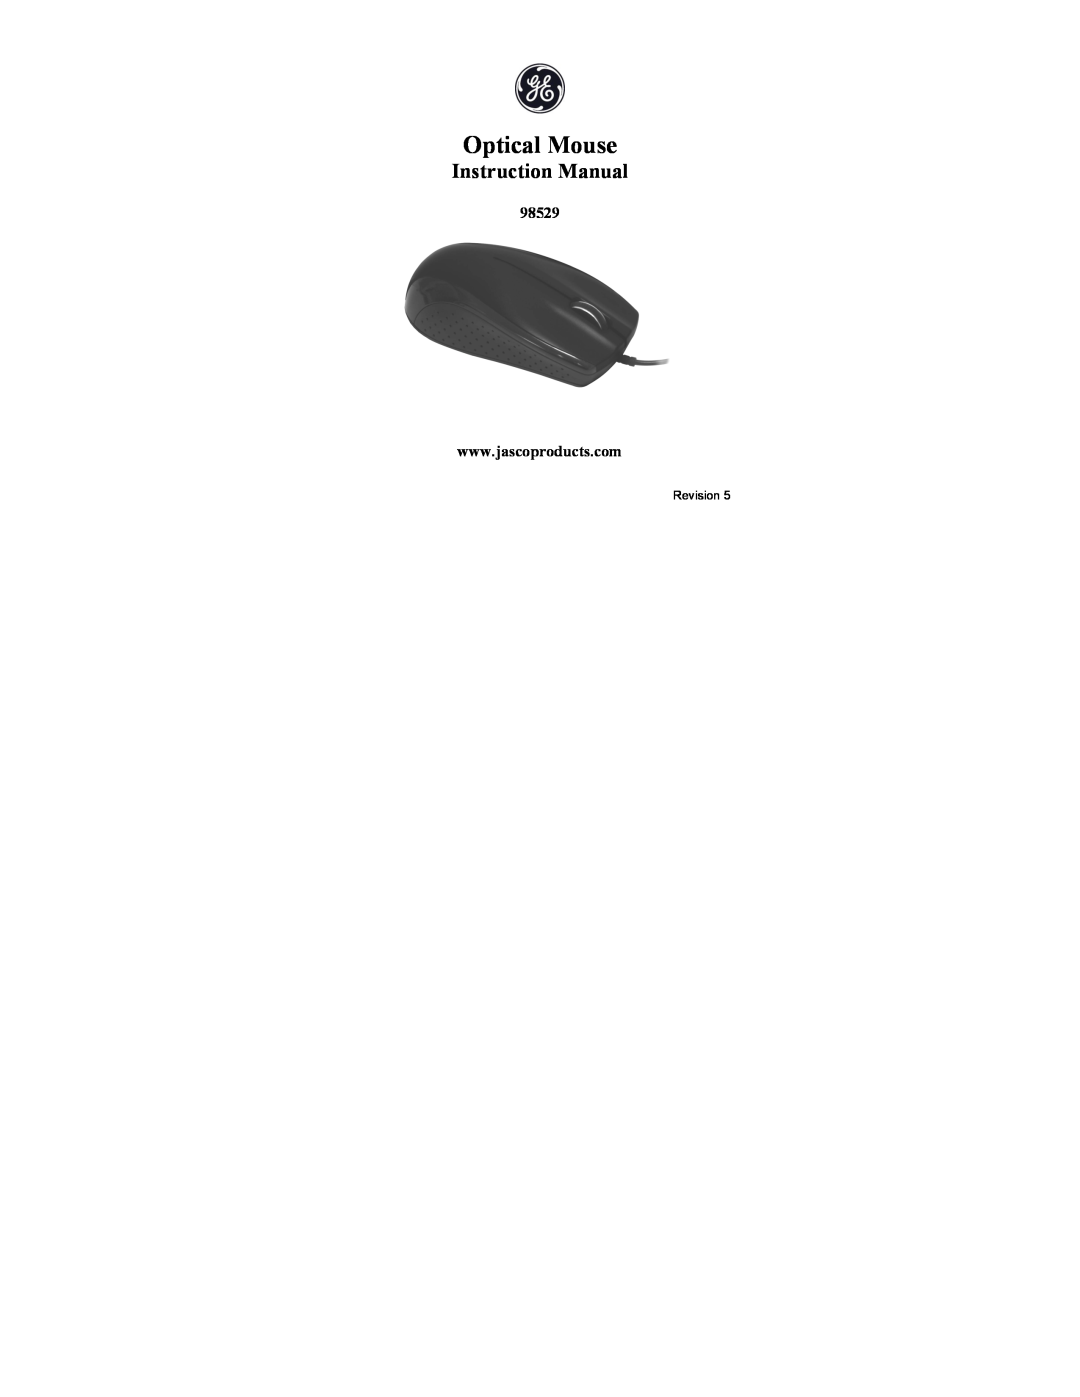 Jasco 98529 instruction manual Optical Mouse, Instruction Manual 